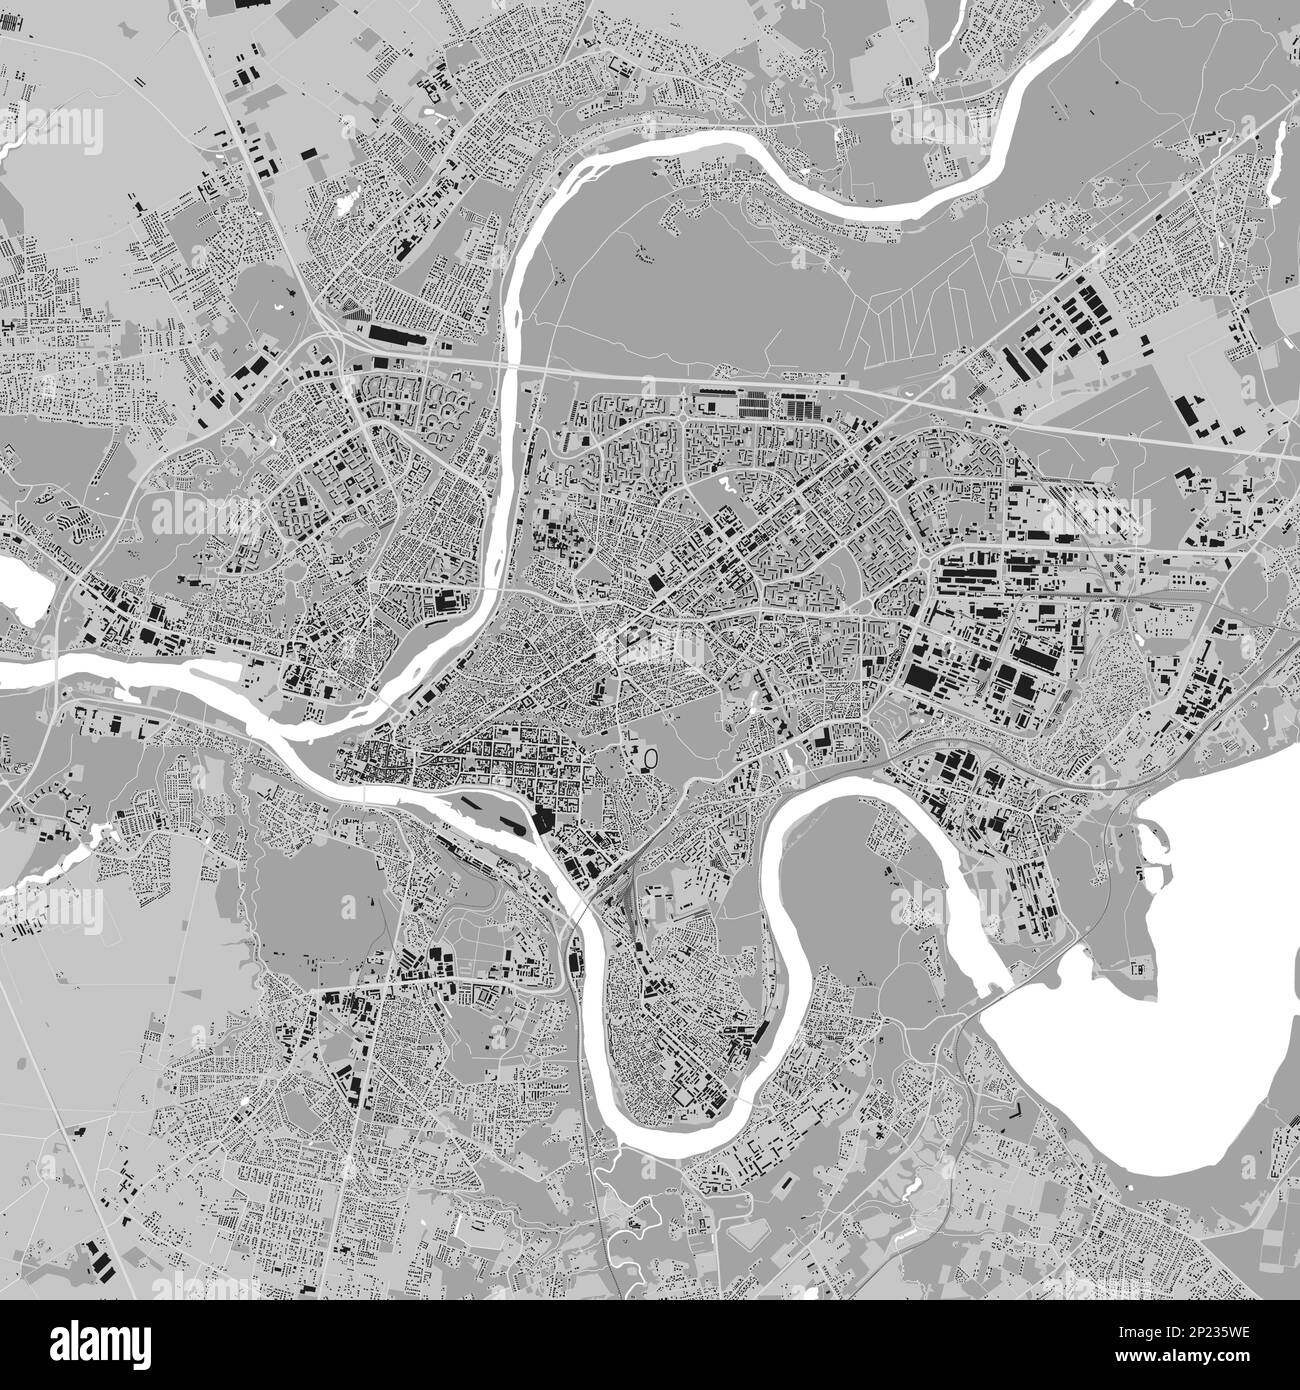 Stadtplan von Kaunas, Stadtplan der Stadt mit grauen Quadraten. Fluss Neman und Neris, Straßen und Eisenbahn, Gebäude und Parks. Vektordarstellung. Stock Vektor